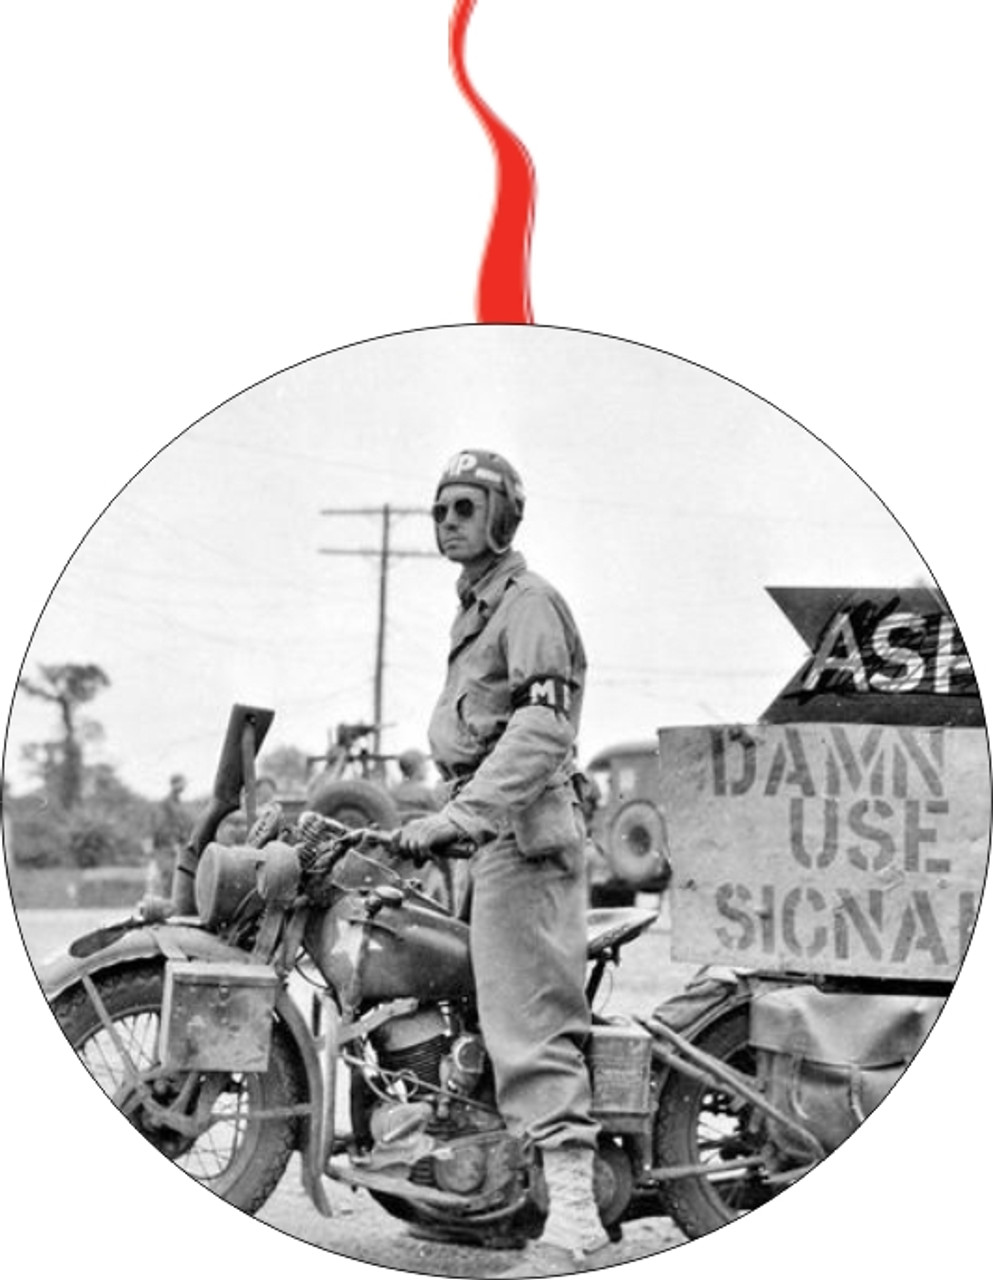 American Military Police On A Harley-Davidson  Christmas Ornament